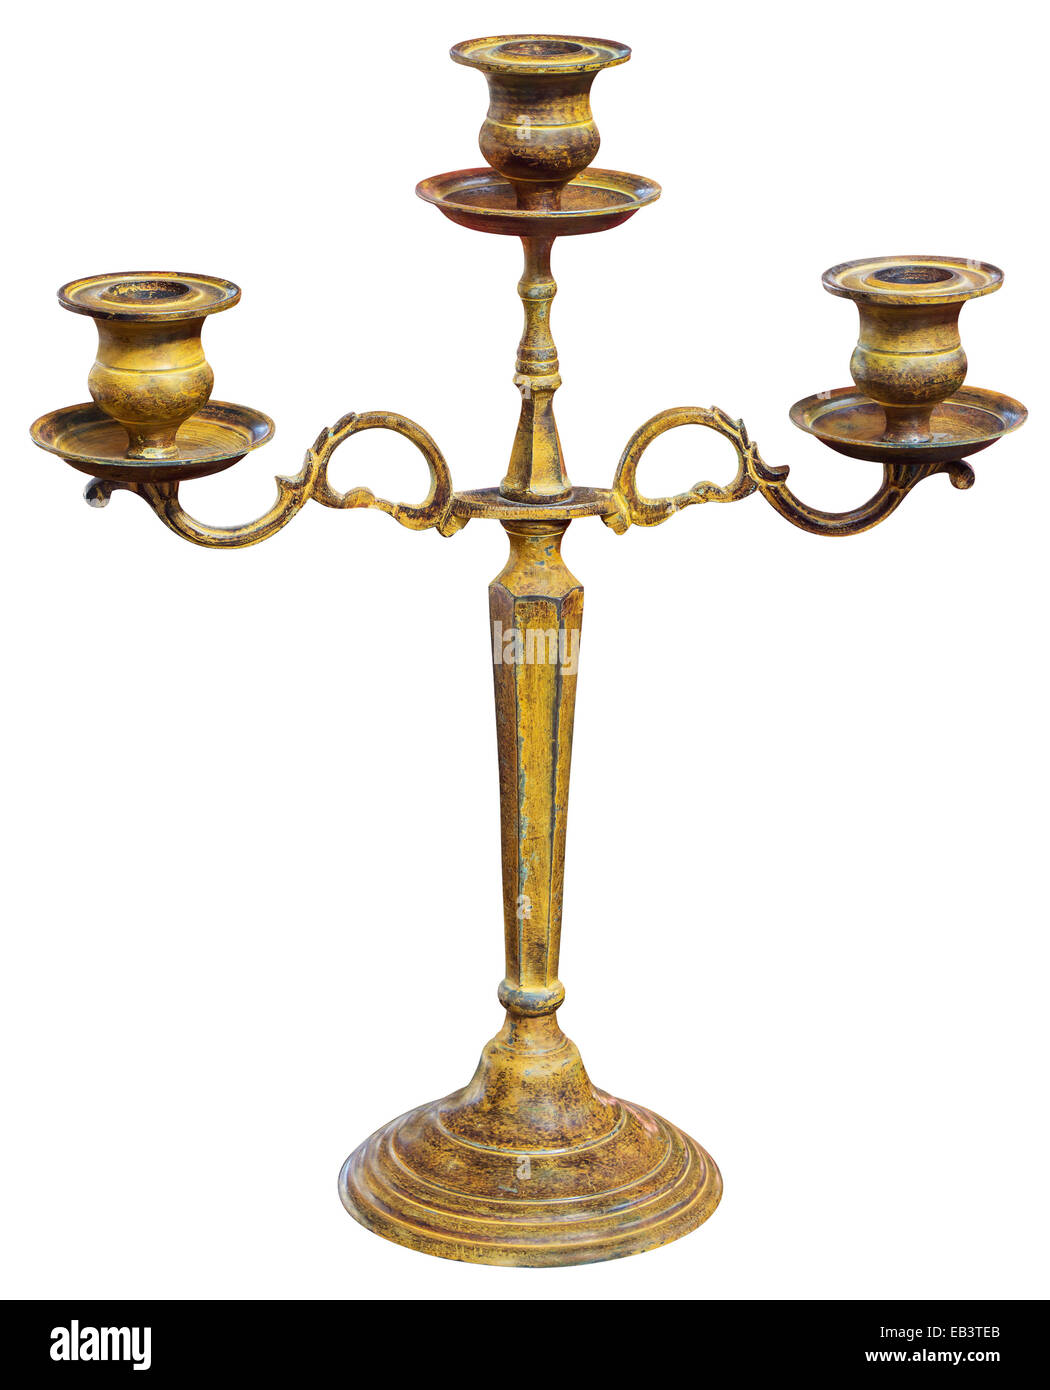 Ancien chandelier d'or isolé sur fond blanc avec Clipping Path Banque D'Images